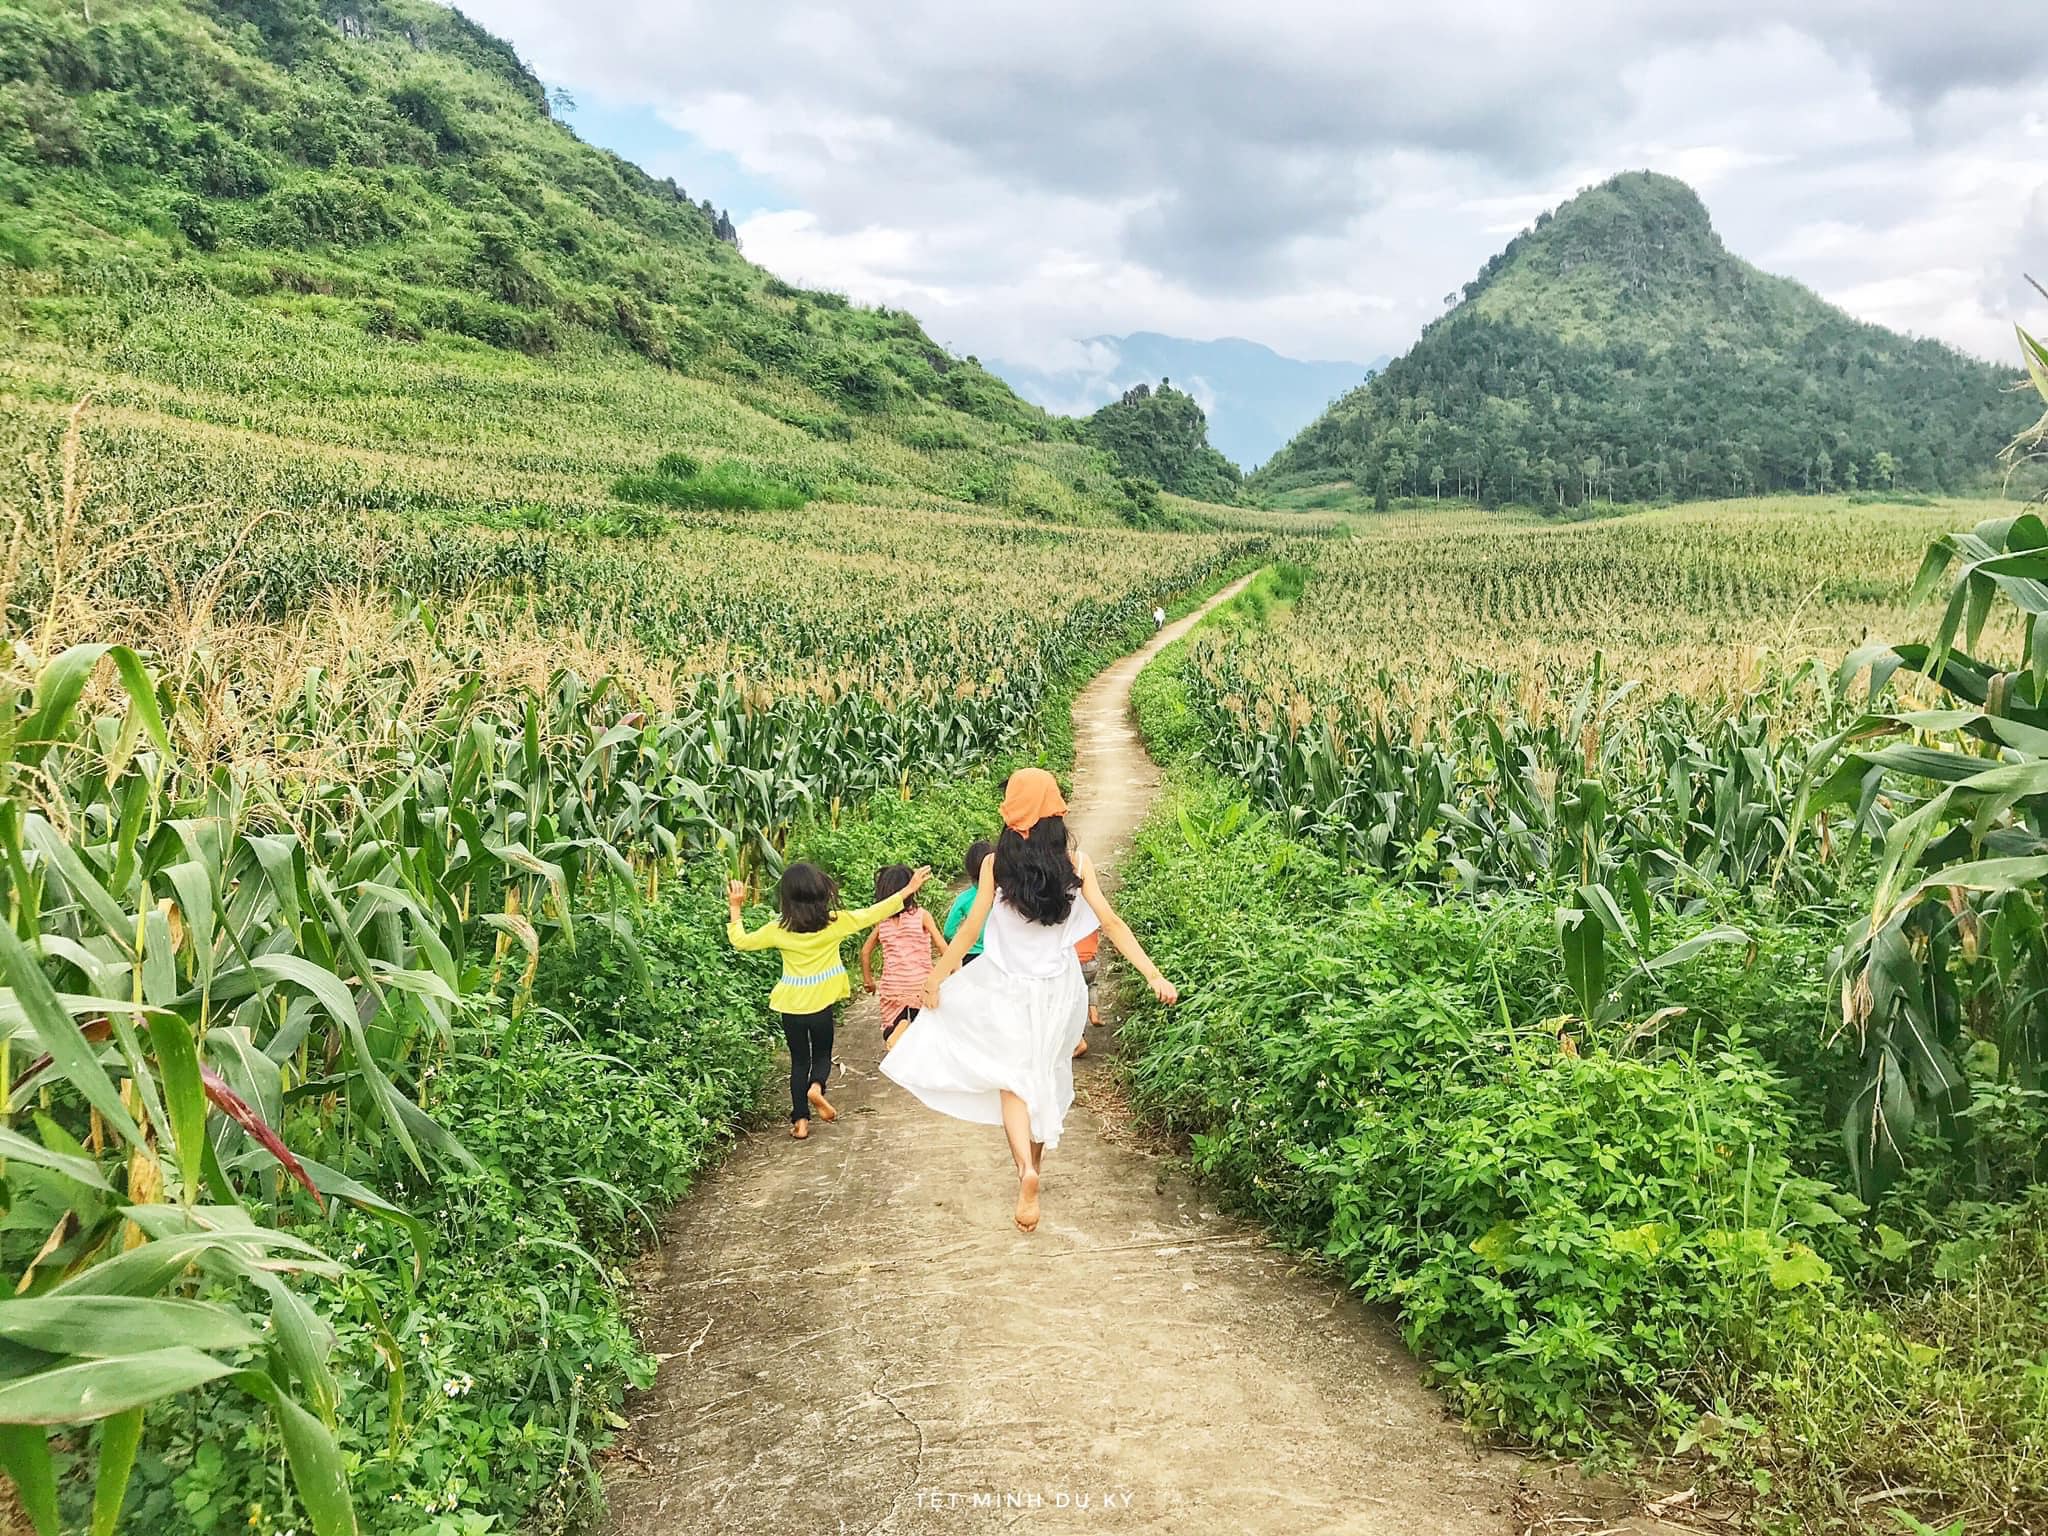 Một trong những ngôi làng cổ ở Hà Giang được nhiều du khách ghé thăm là thôn Nặm Đăm, dù là điểm đến còn mới lạ nhưng cảnh sắc nơi đây thật làm say đắm lòng người.